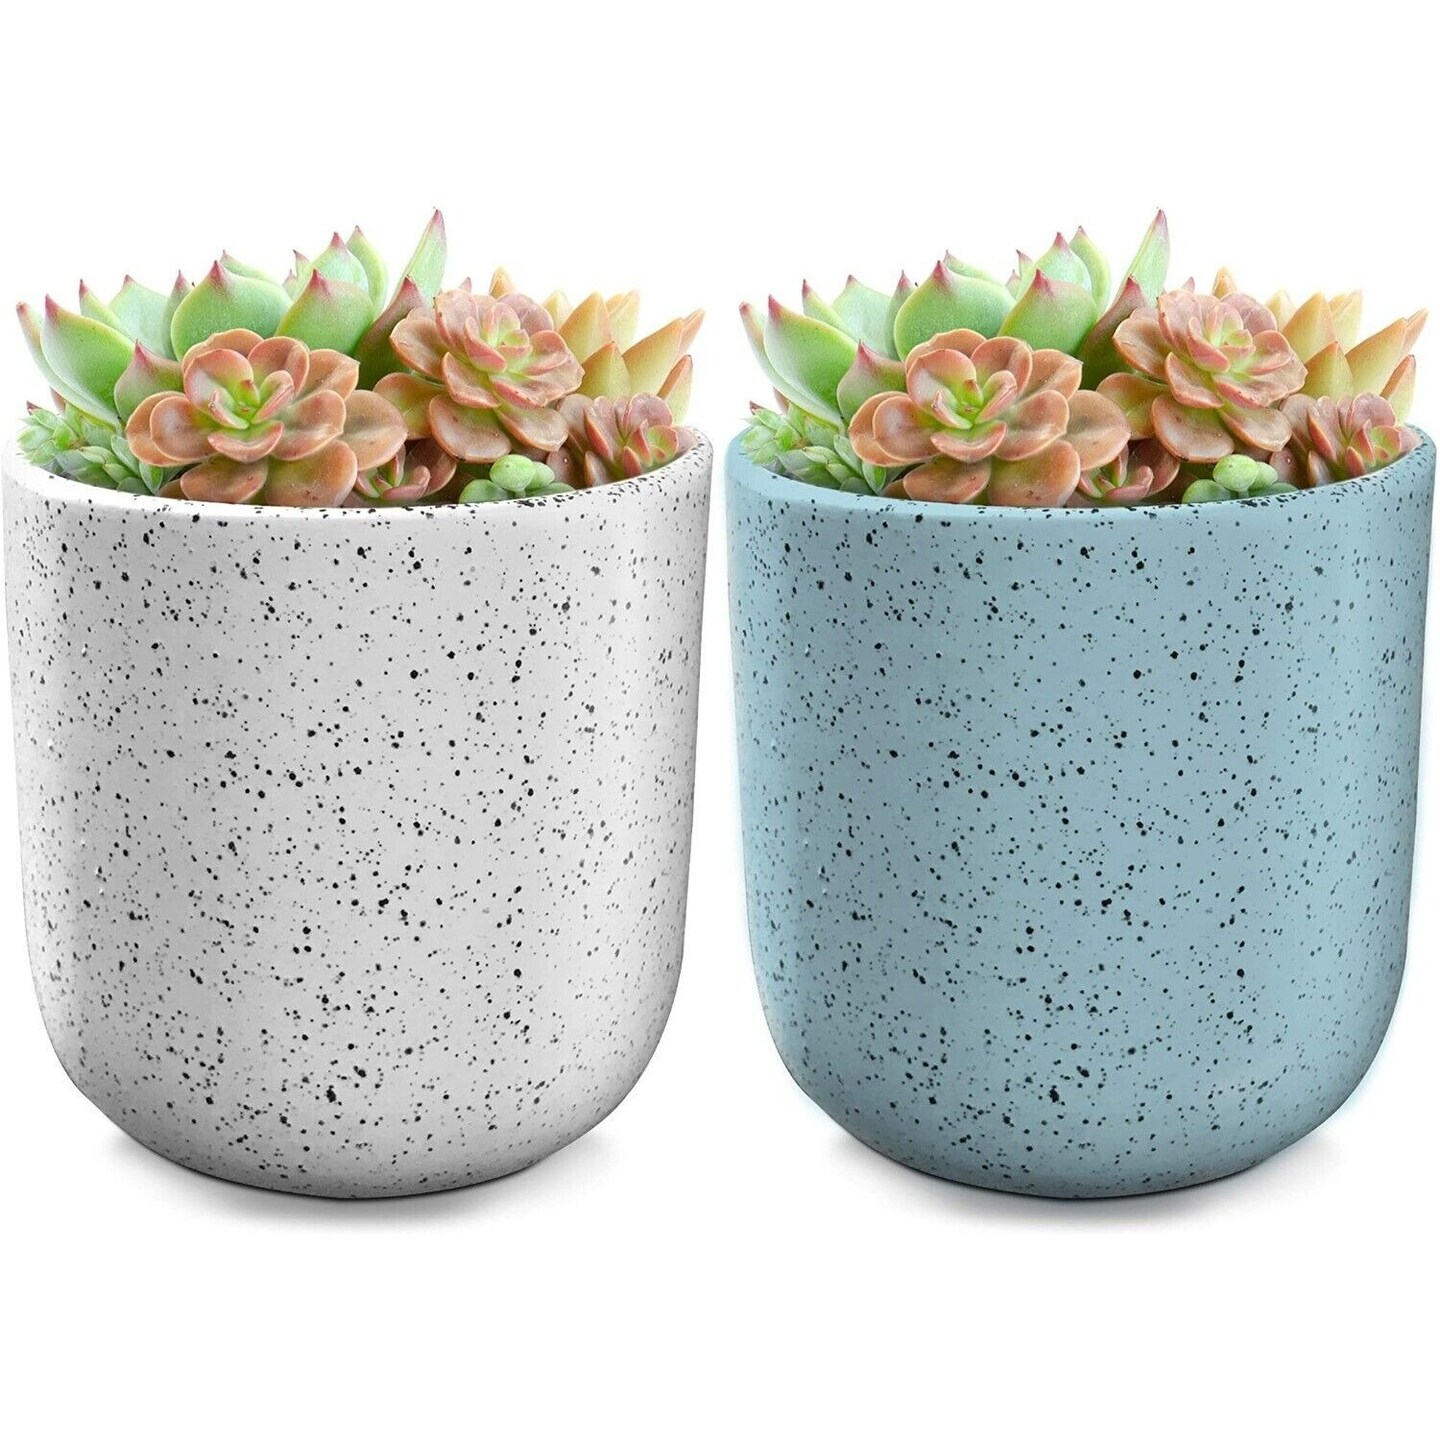 Flower Plant Pots Planter Ceramic For Succulents Plants, White